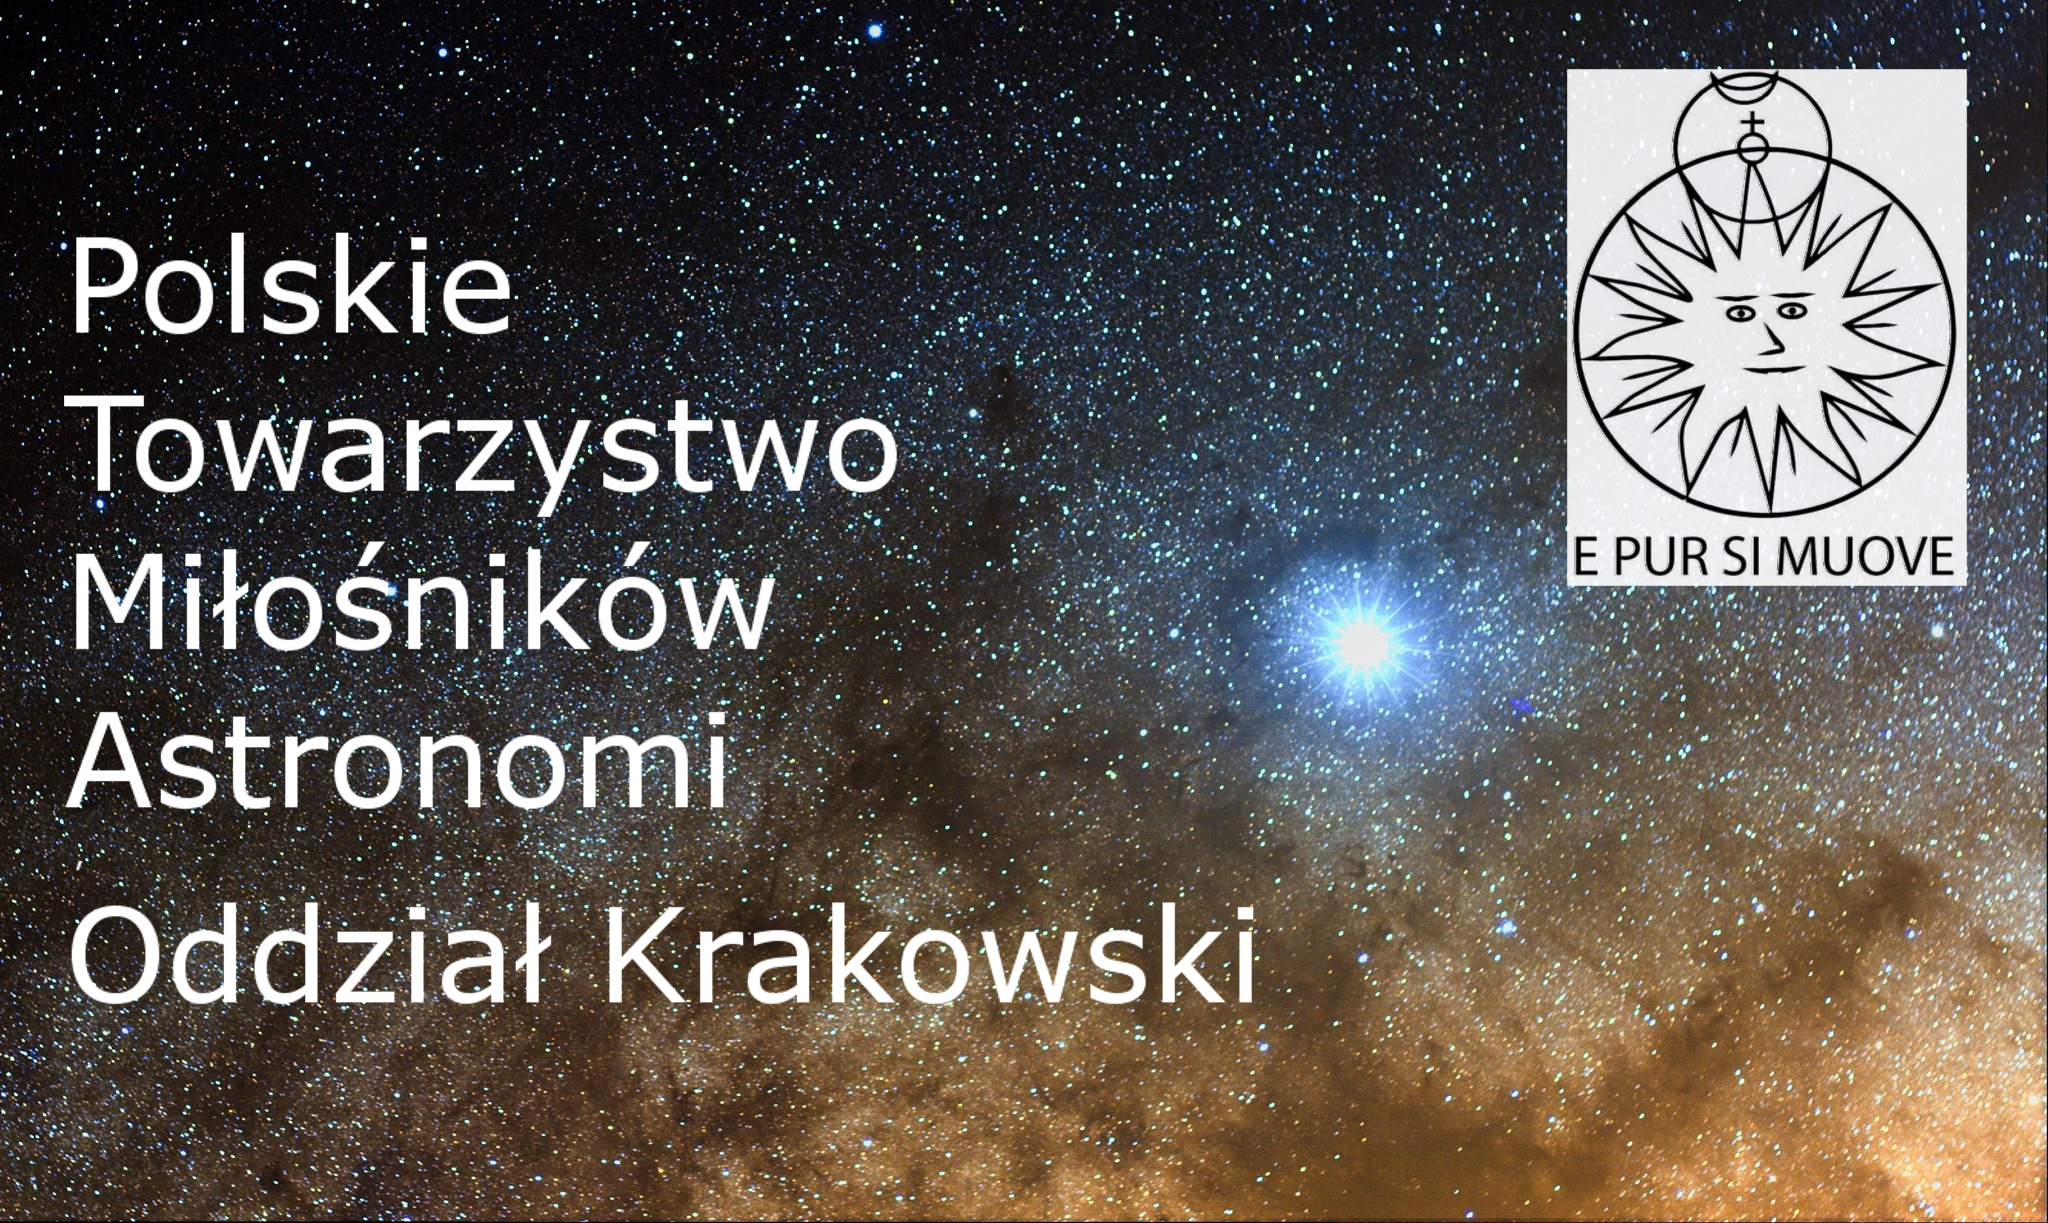 Astronomiczne datowanie Ukrzyżowania  | dr hab. Tomasz Ściężor | PTMA Kraków @ ul. Górników 27